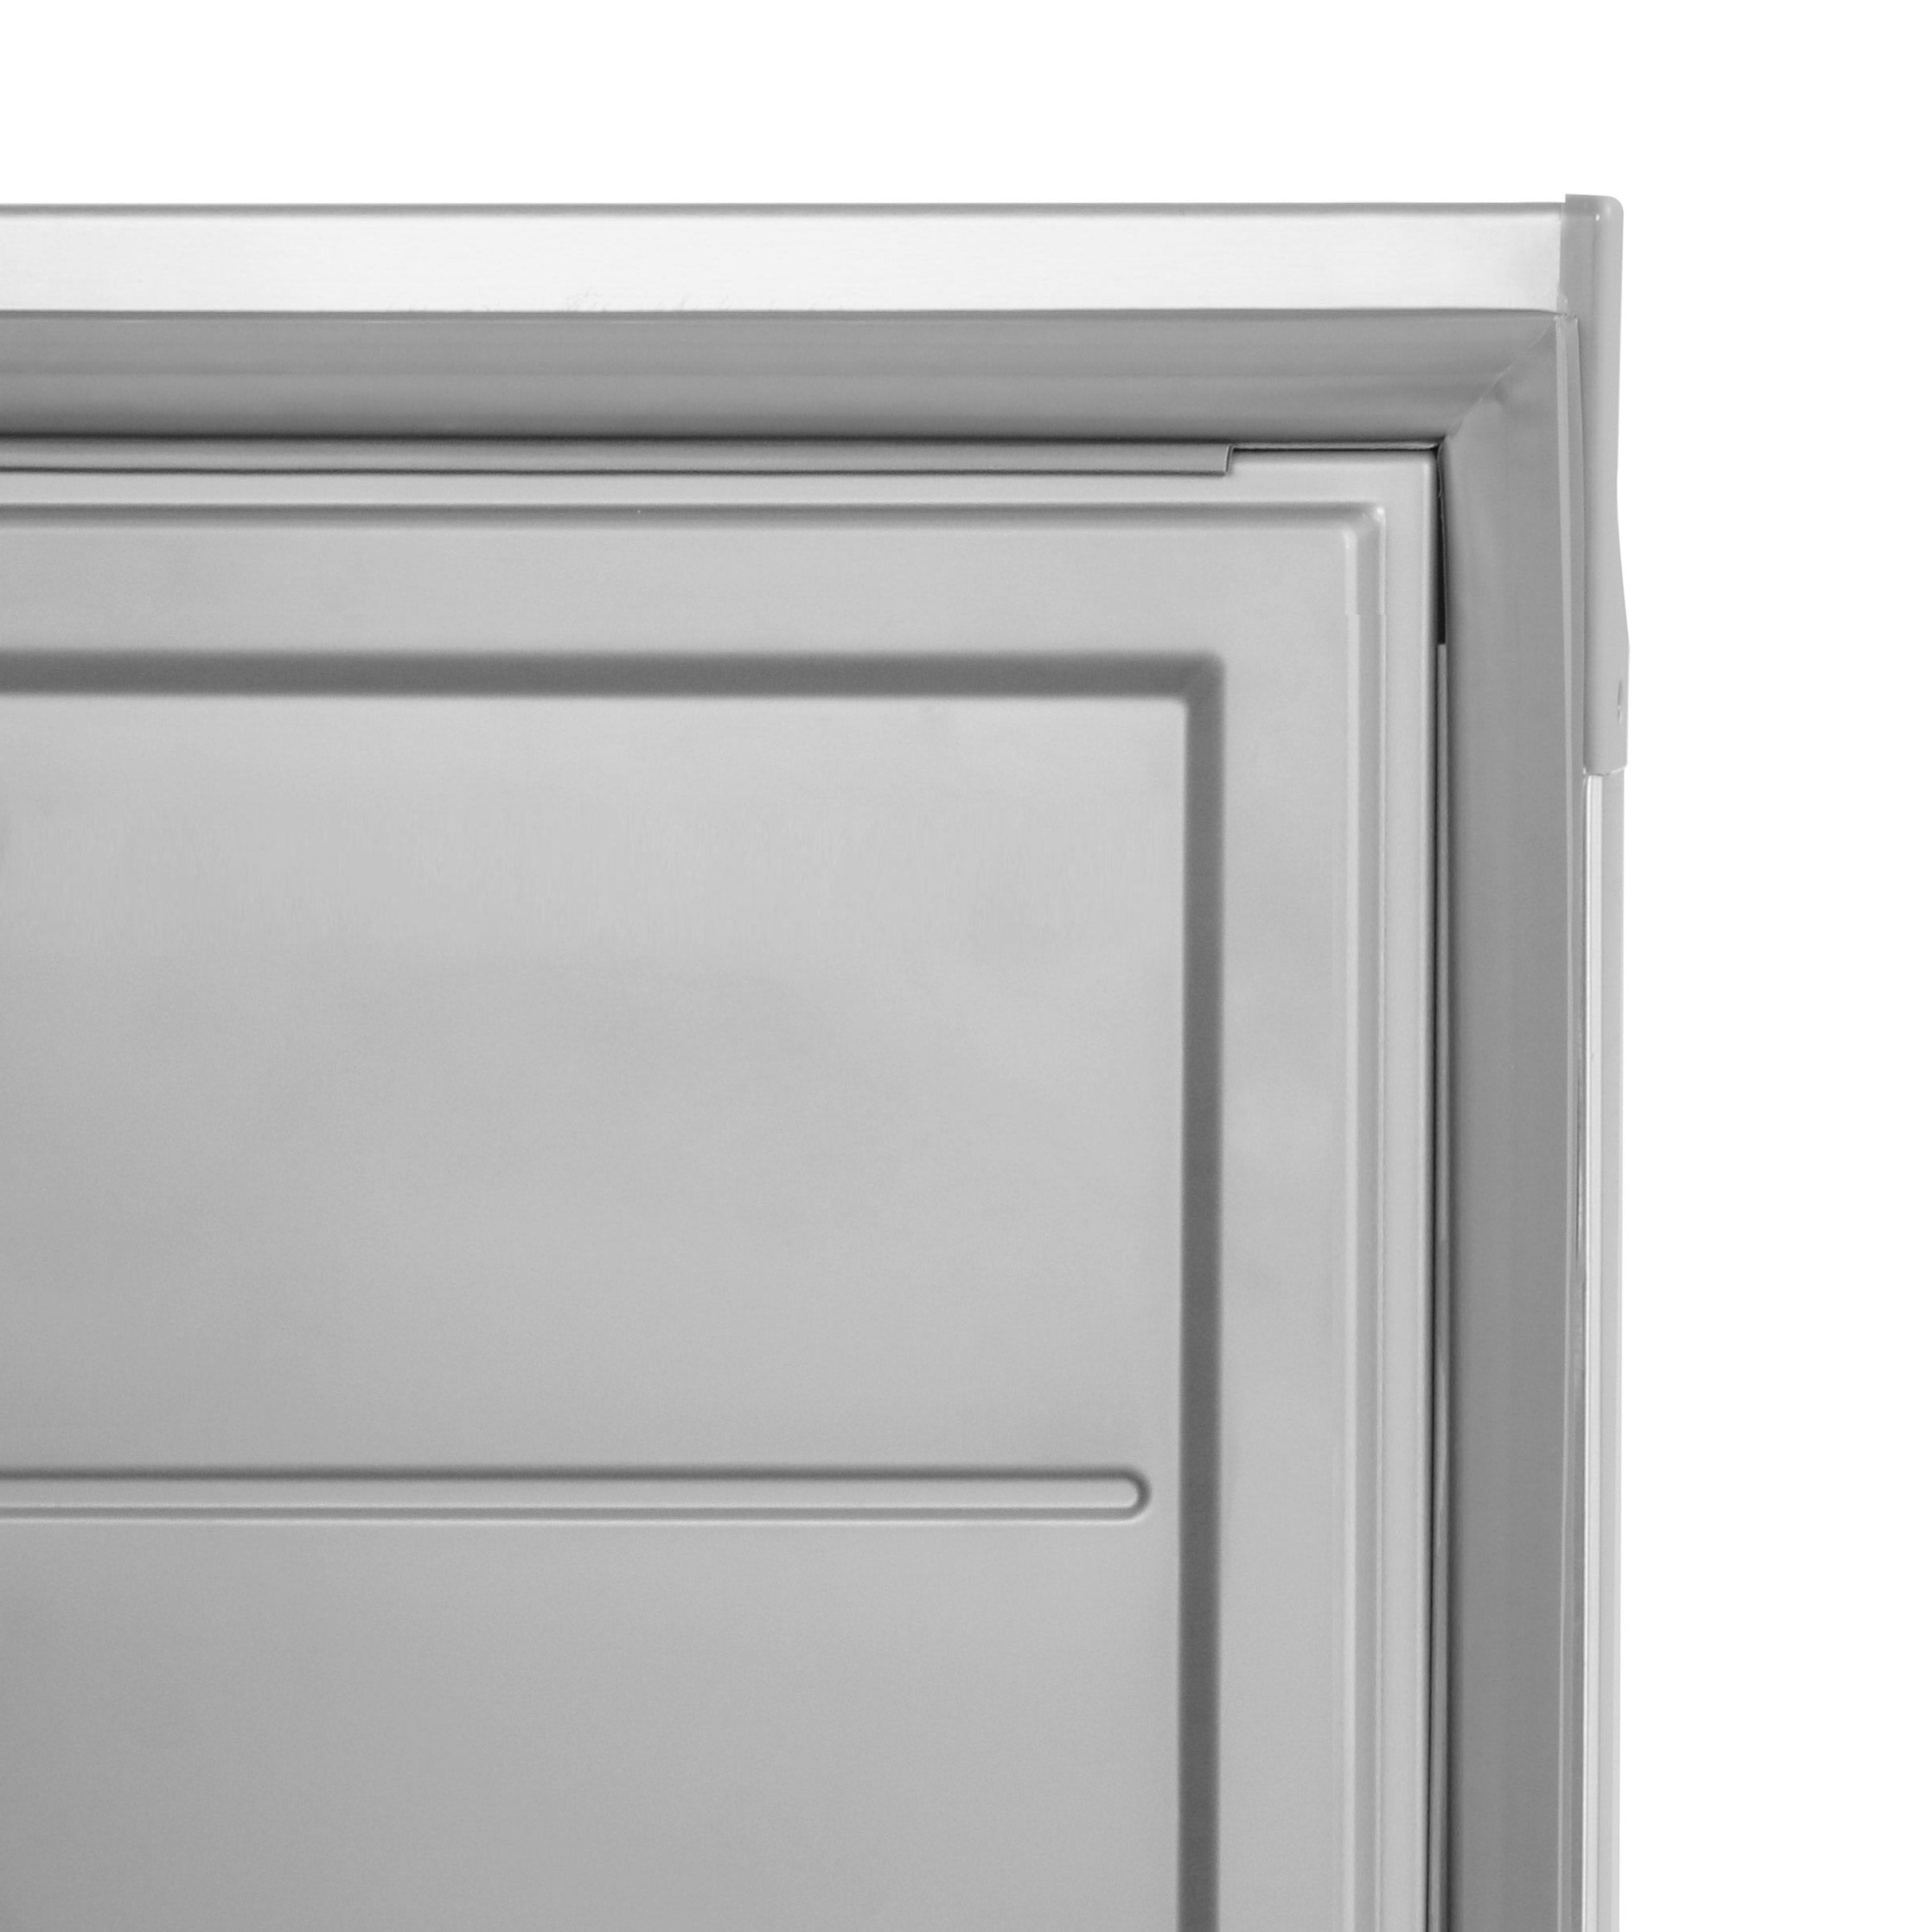 Хладилник ECO - GN 2/1 - 610 литра - 1 врата